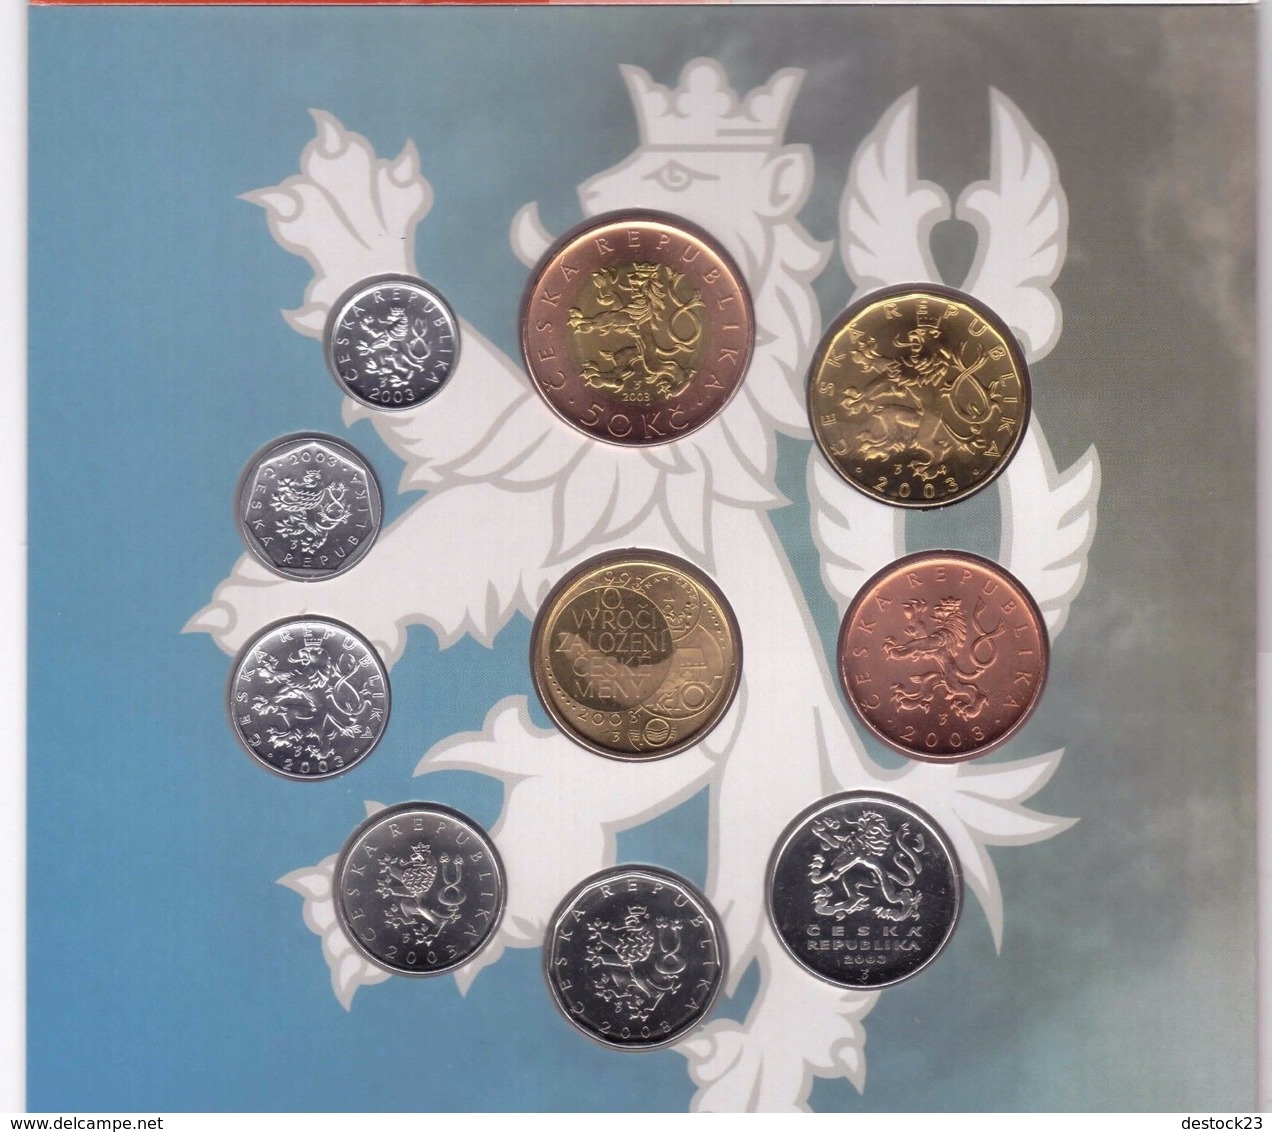 Neuf Rare Coffret Serie 9 Pieces Officiel Couronne République Tchèque Annee 2003 Édition Spéciale 10 Ans De La Banque Éd - Czech Republic